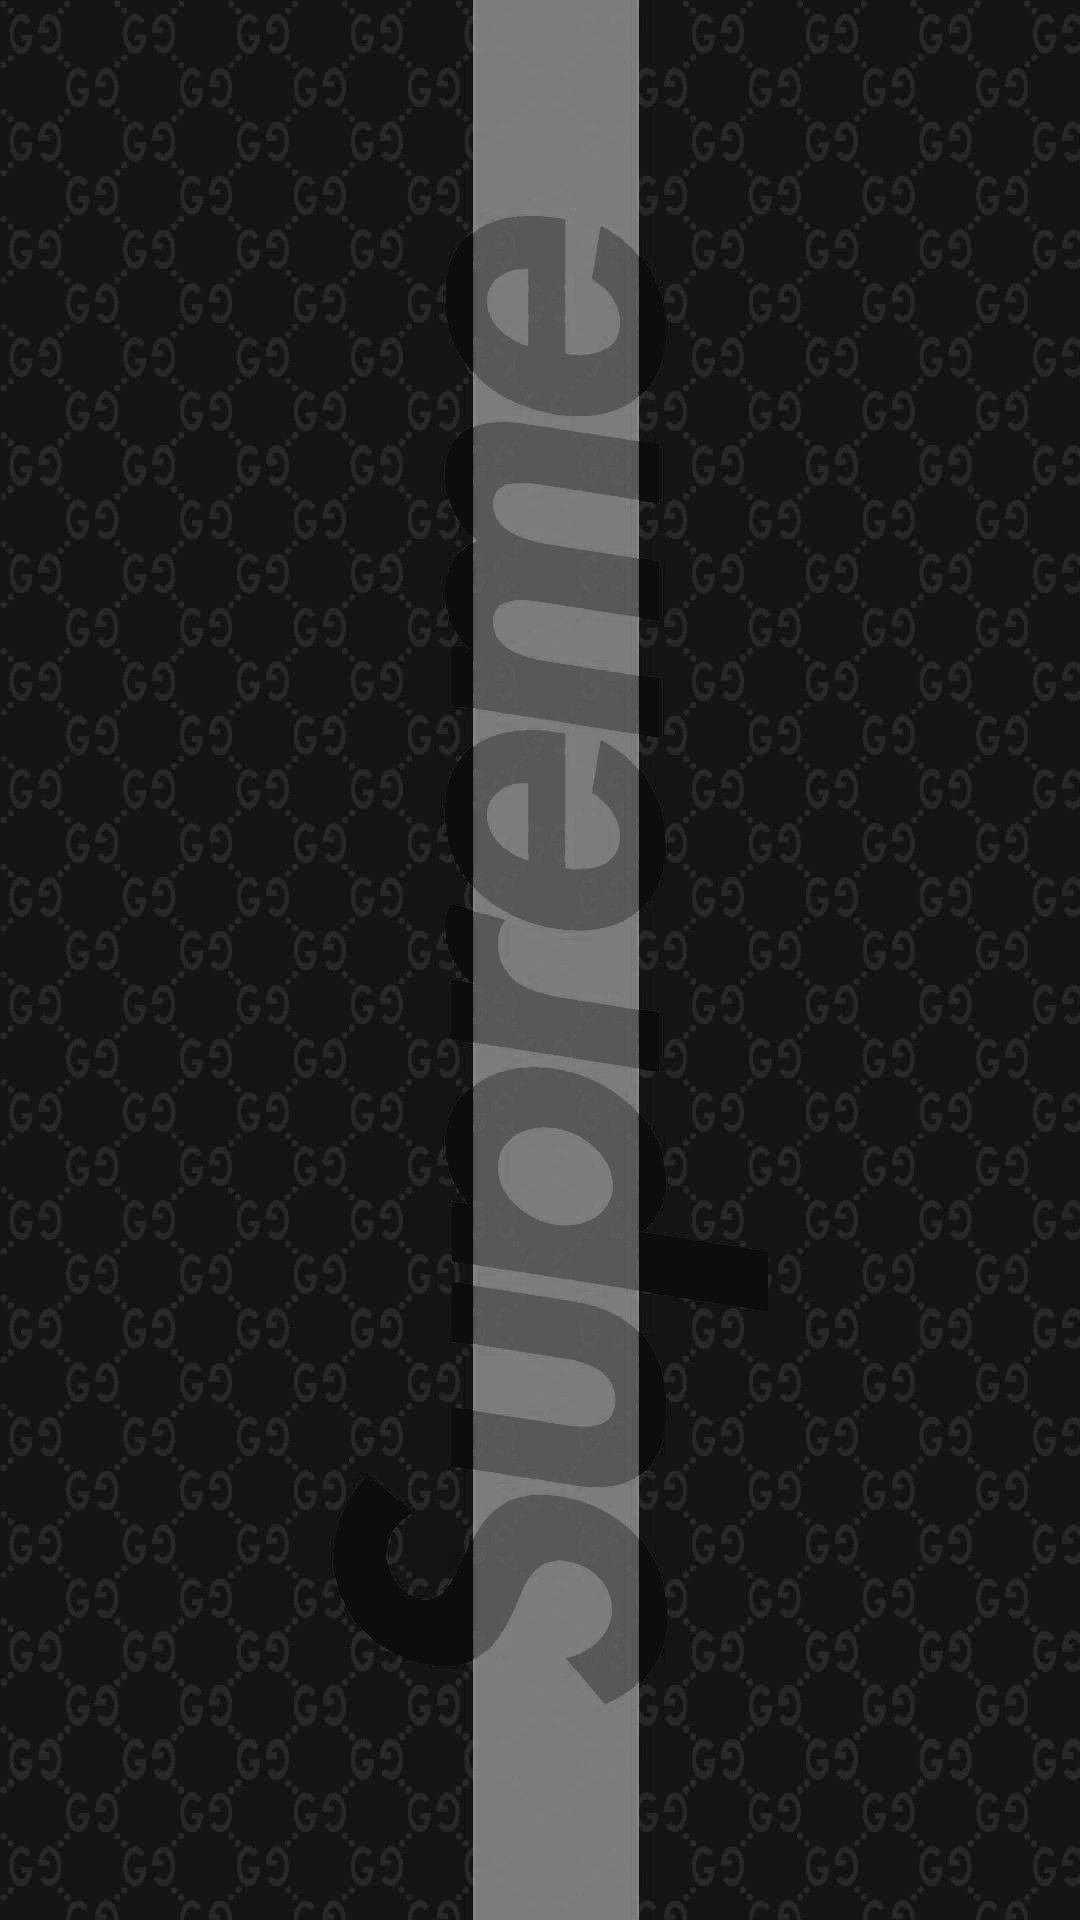 Black Louis Vuitton Supreme Logo HD Supreme Wallpapers  HD Wallpapers  ID  75147